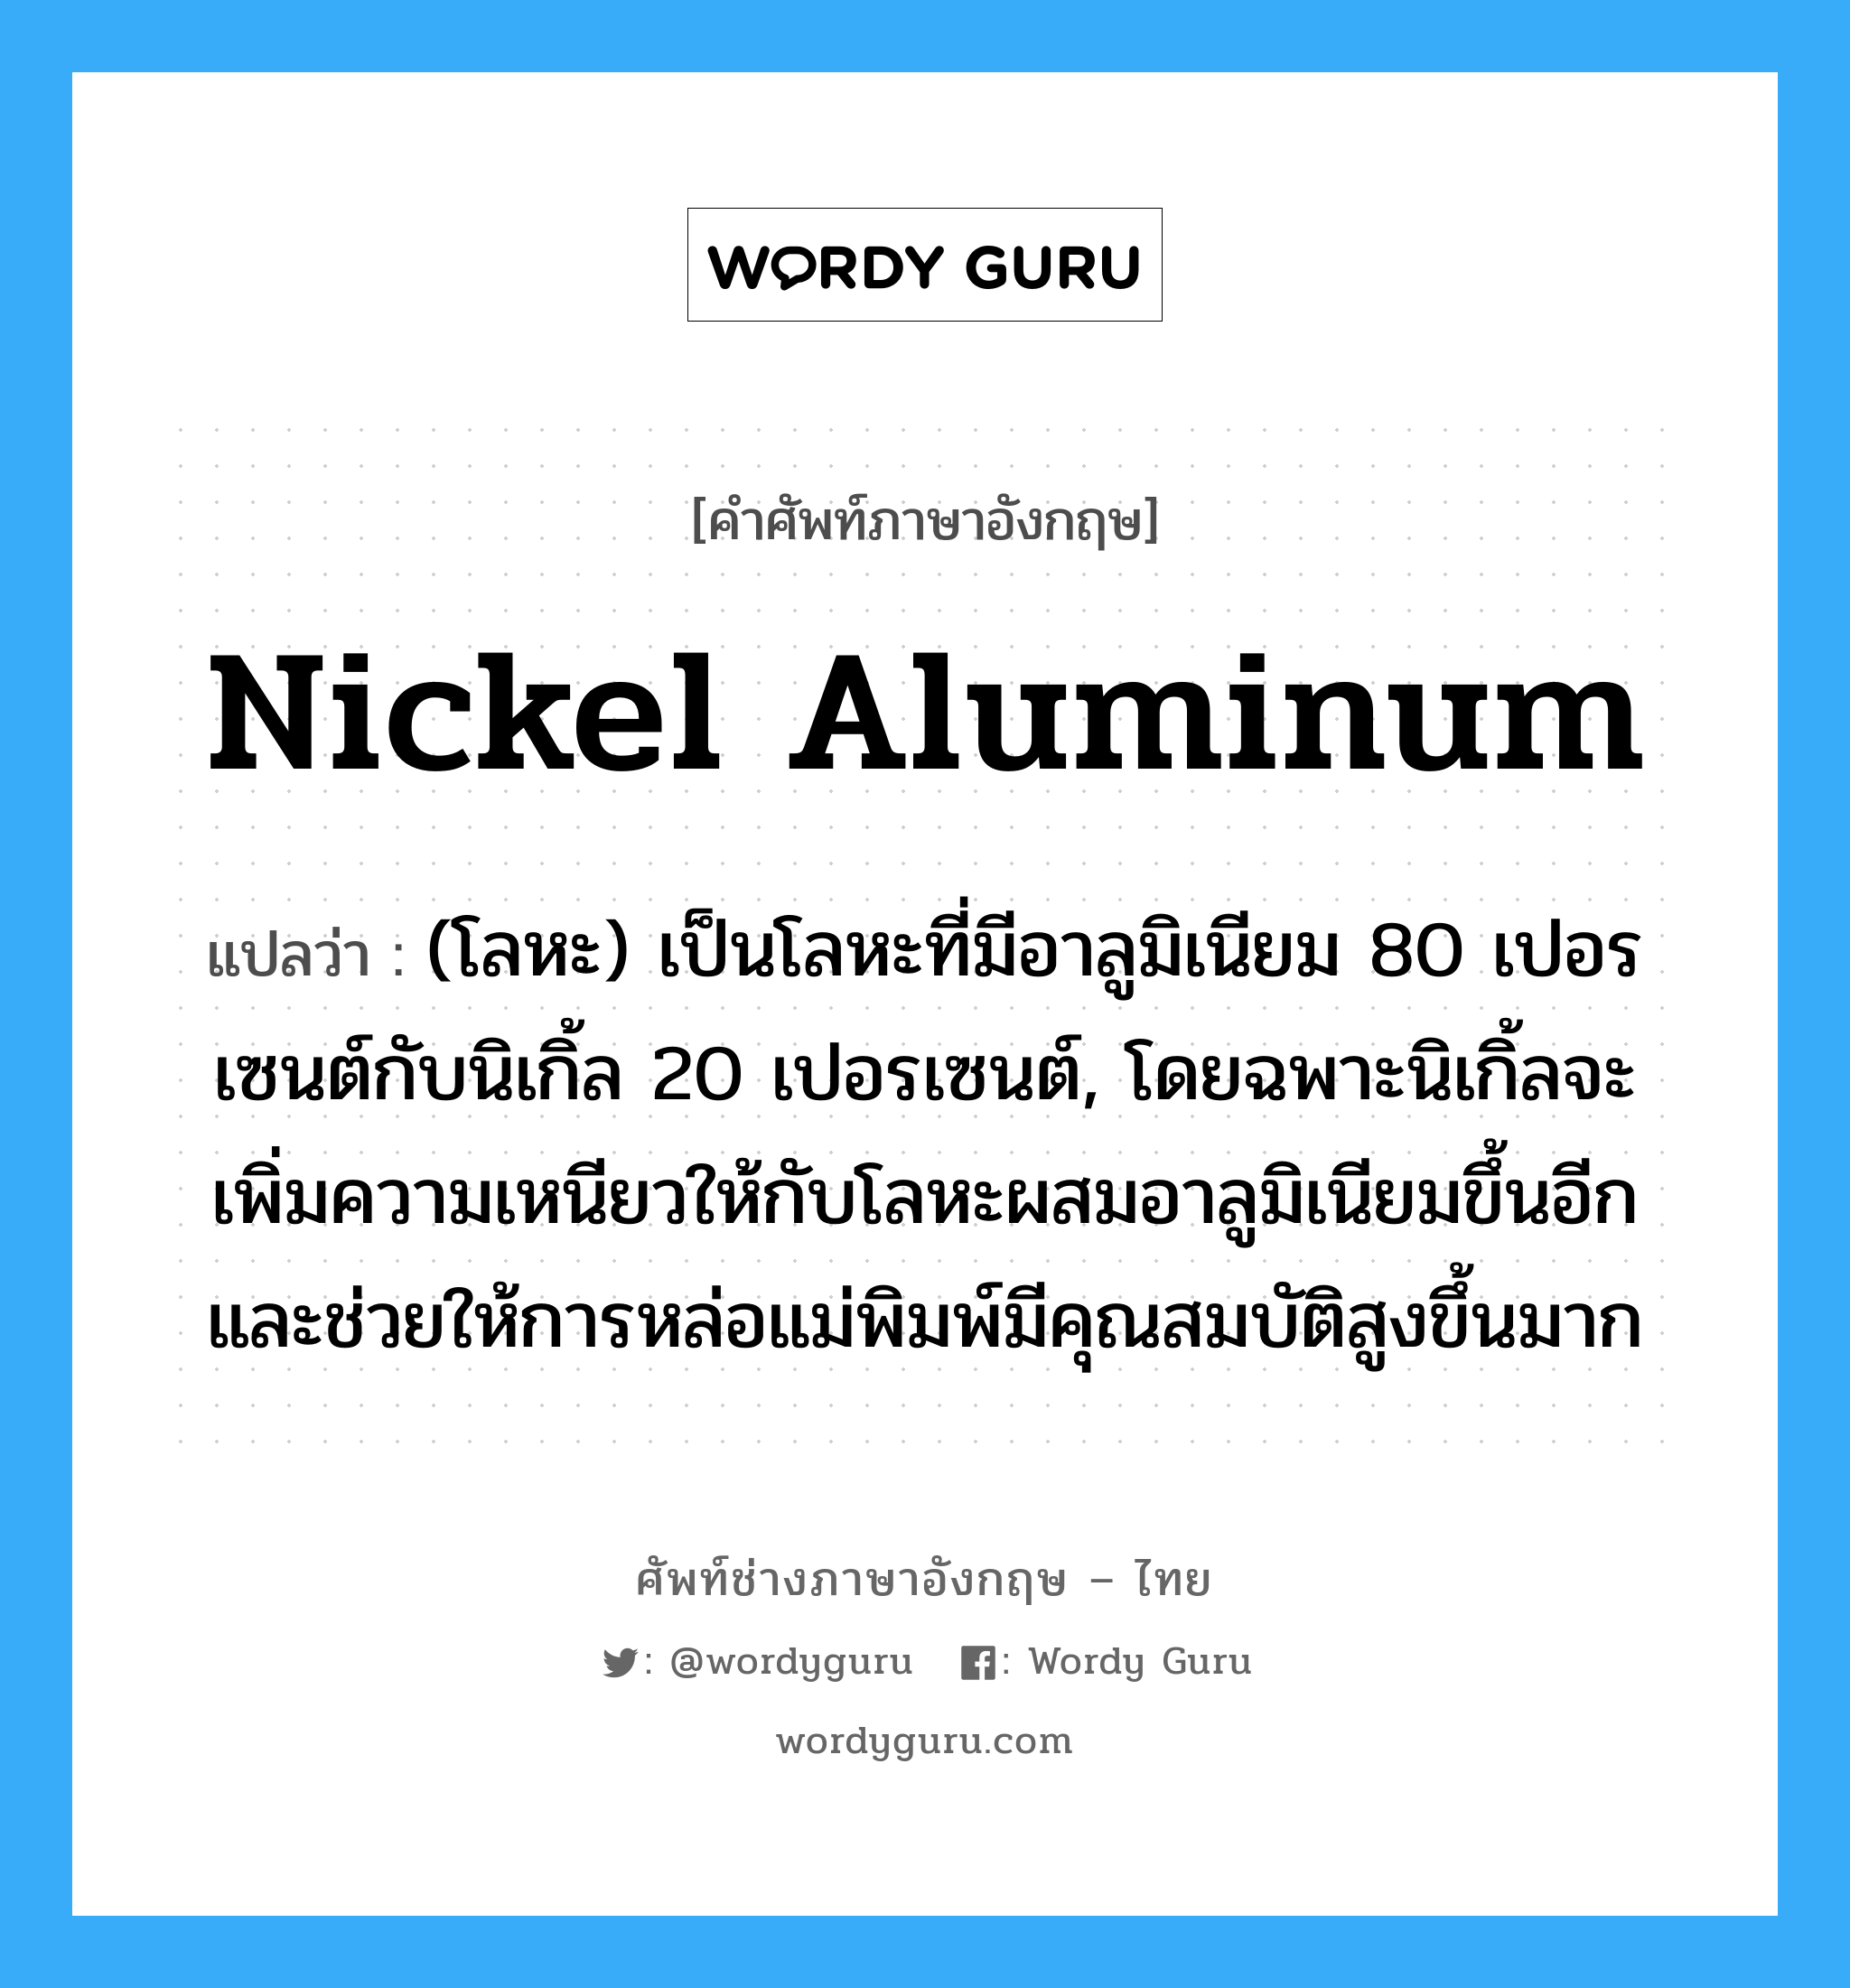 nickel aluminum แปลว่า?, คำศัพท์ช่างภาษาอังกฤษ - ไทย nickel aluminum คำศัพท์ภาษาอังกฤษ nickel aluminum แปลว่า (โลหะ) เป็นโลหะที่มีอาลูมิเนียม 80 เปอรเซนต์กับนิเกิ้ล 20 เปอรเซนต์, โดยฉพาะนิเกิ้ลจะเพิ่มความเหนียวให้กับโลหะผสมอาลูมิเนียมขึ้นอีก และช่วยให้การหล่อแม่พิมพ์มีคุณสมบัติสูงขึ้นมาก